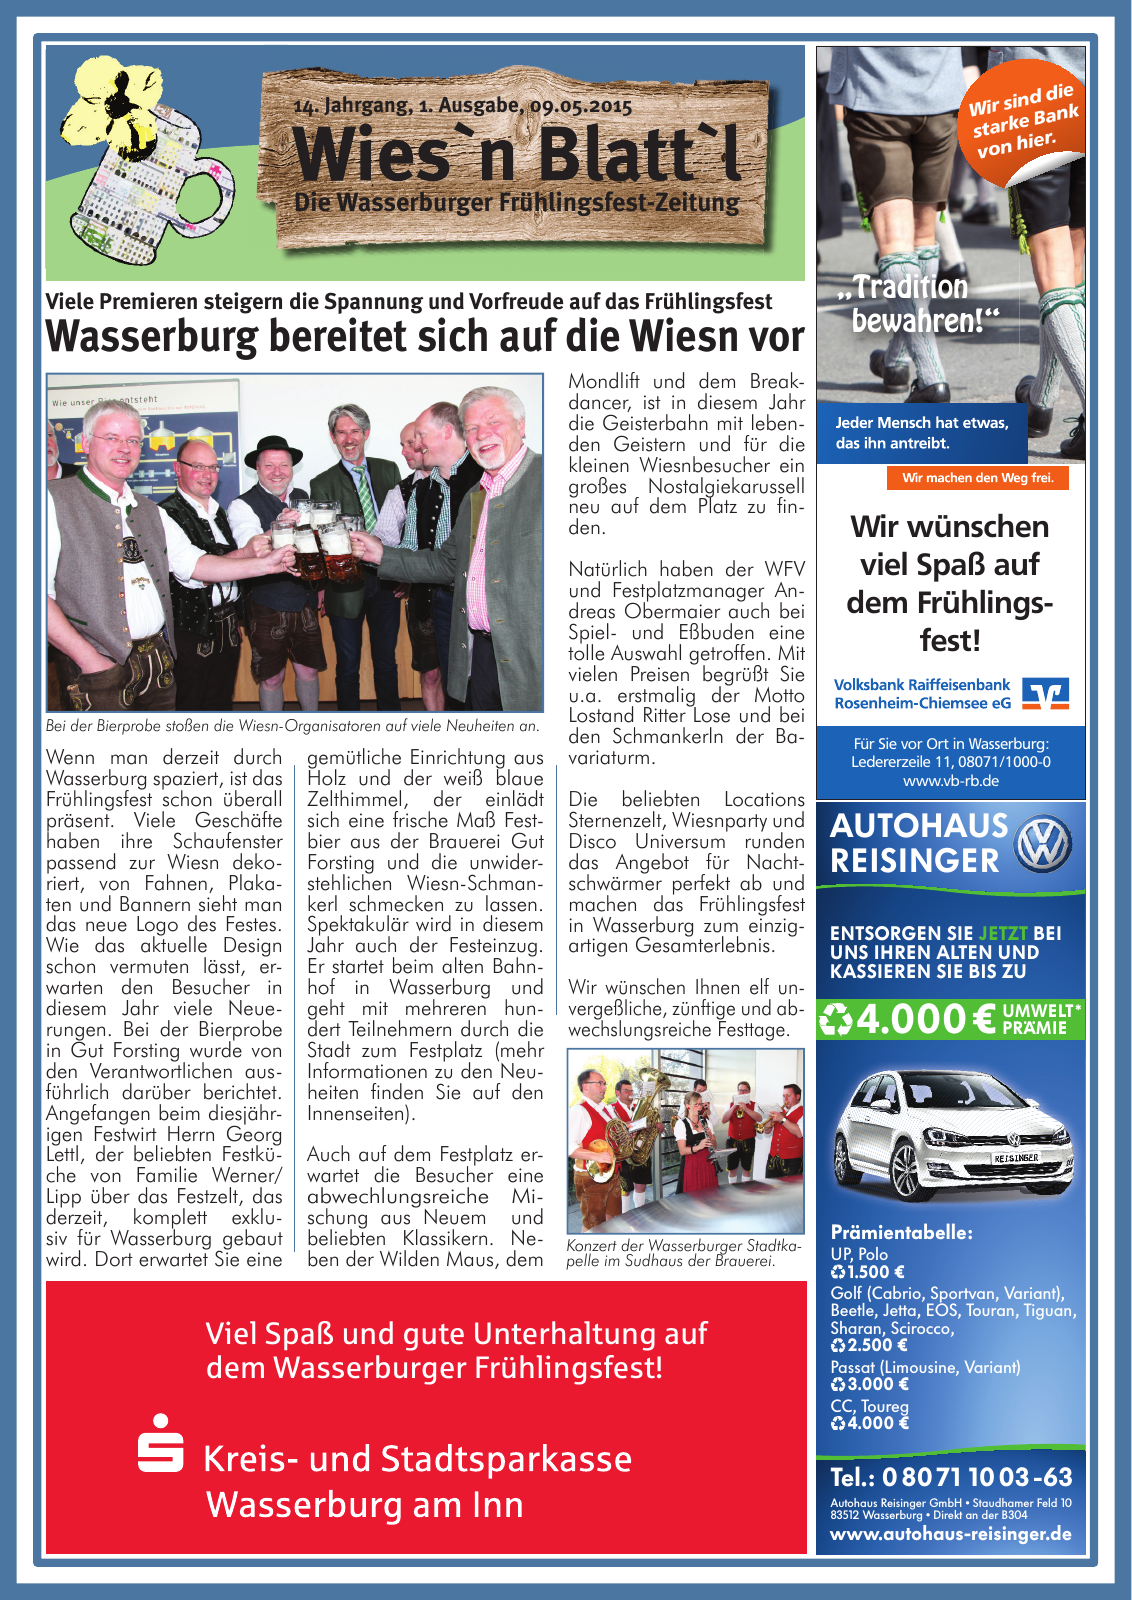 Vorschau Wasserburger Wiesnblattl 2015 Ausgabe 1 Seite 1